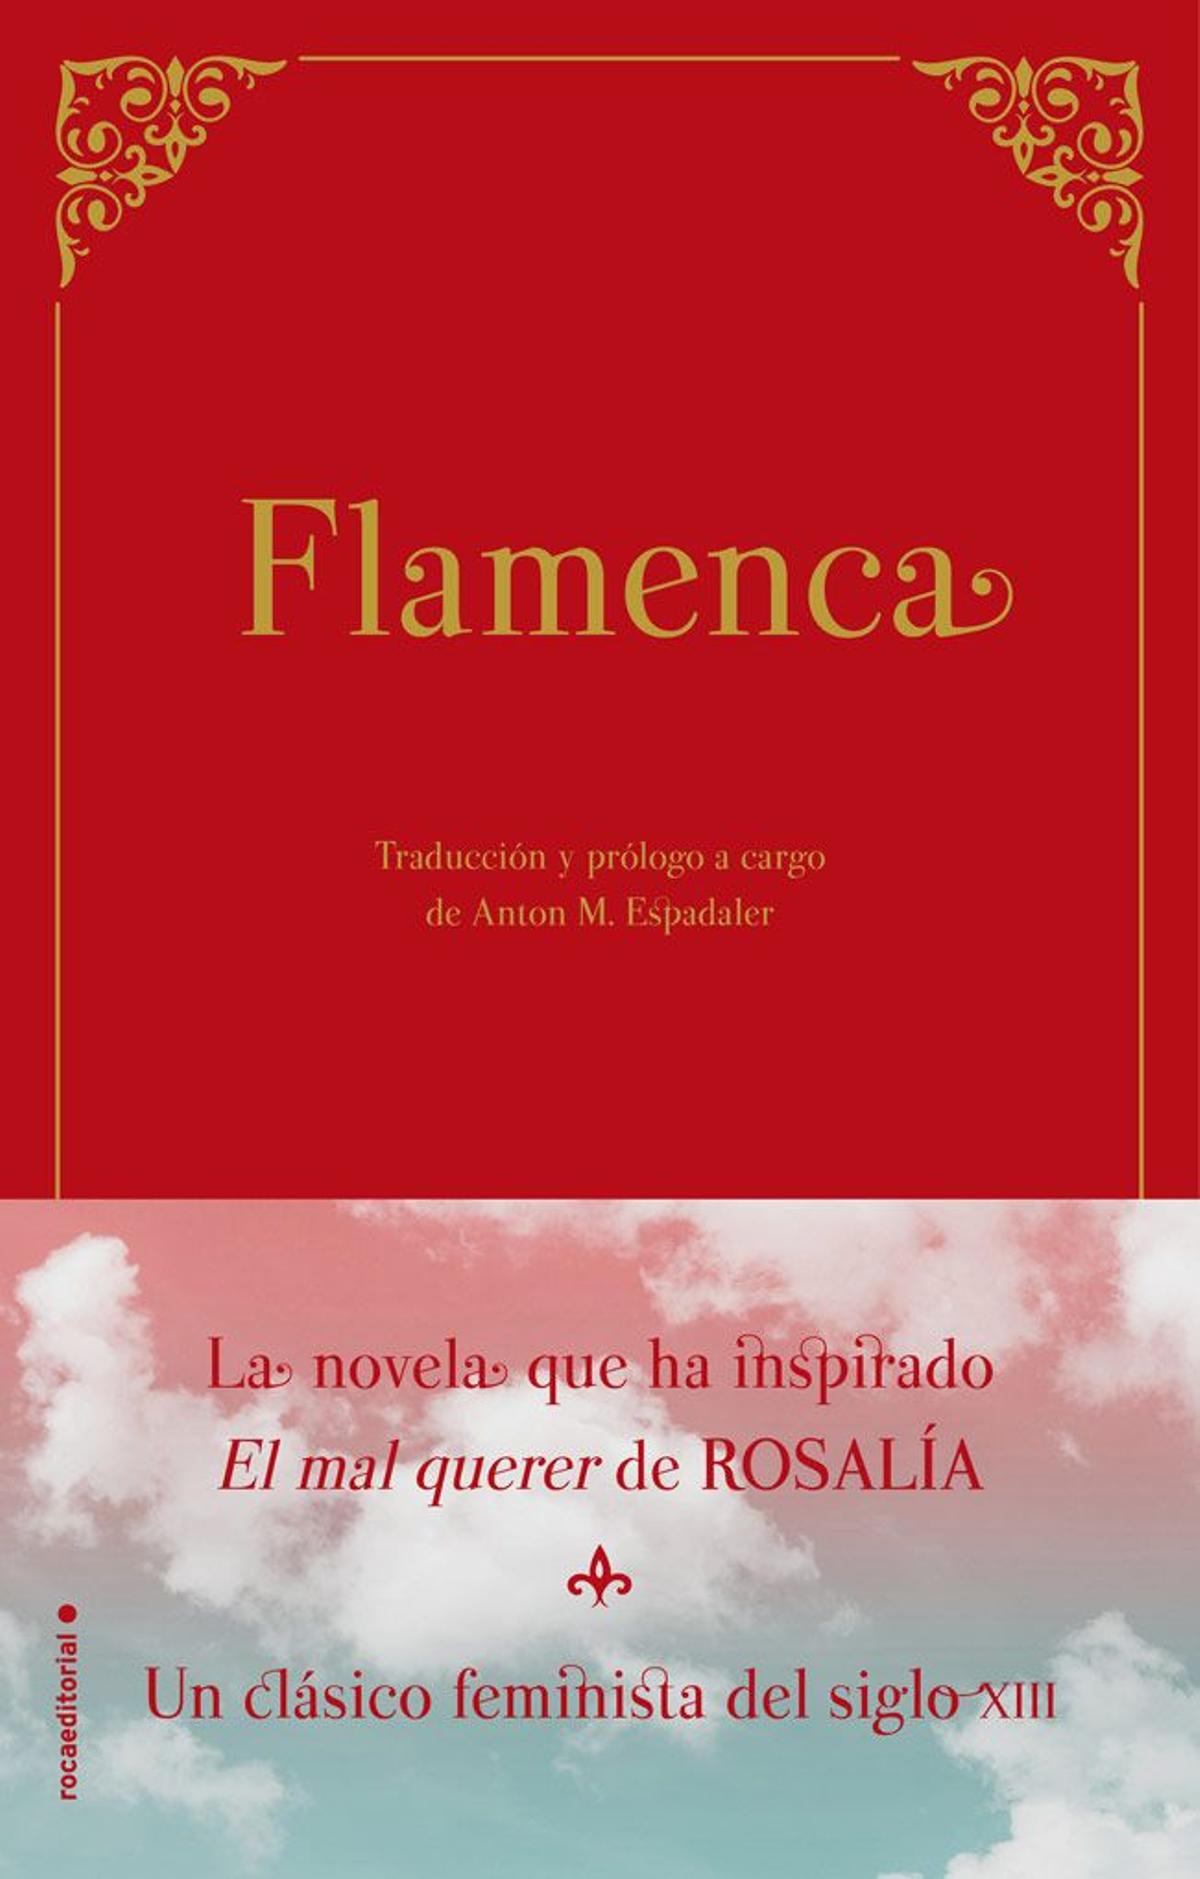 El libro 'Flamenca'